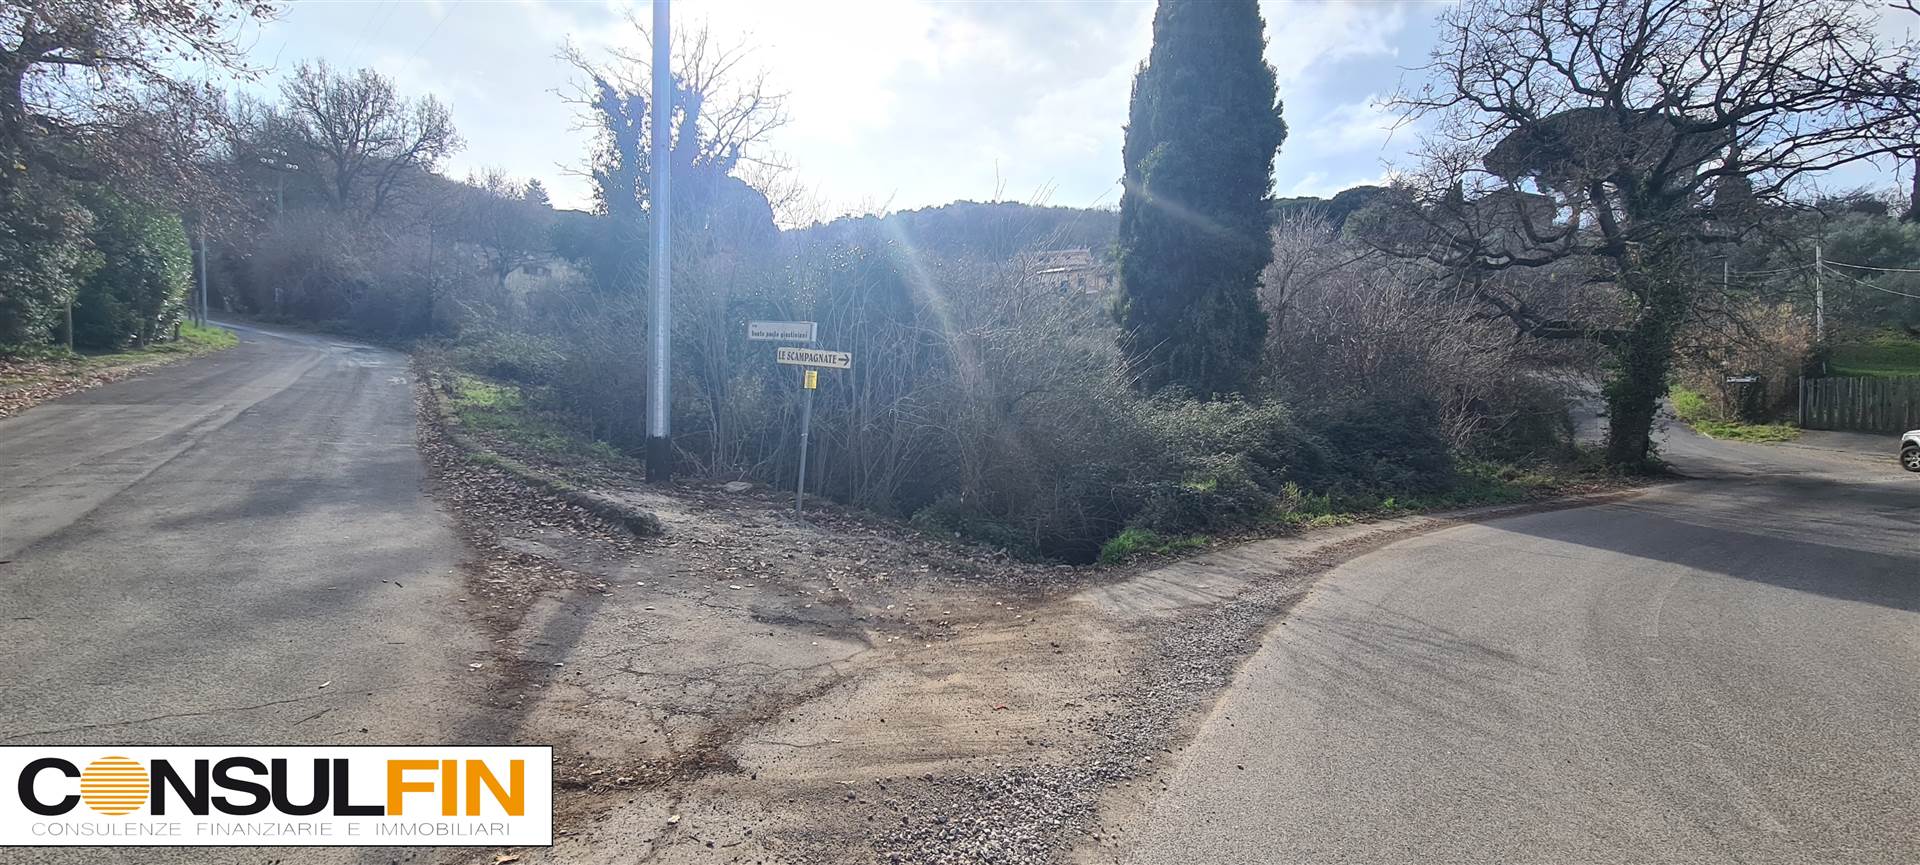 Terreno Edificabile Residenziale in vendita a Monte Porzio Catone, 9999 locali, prezzo € 150.000 | CambioCasa.it